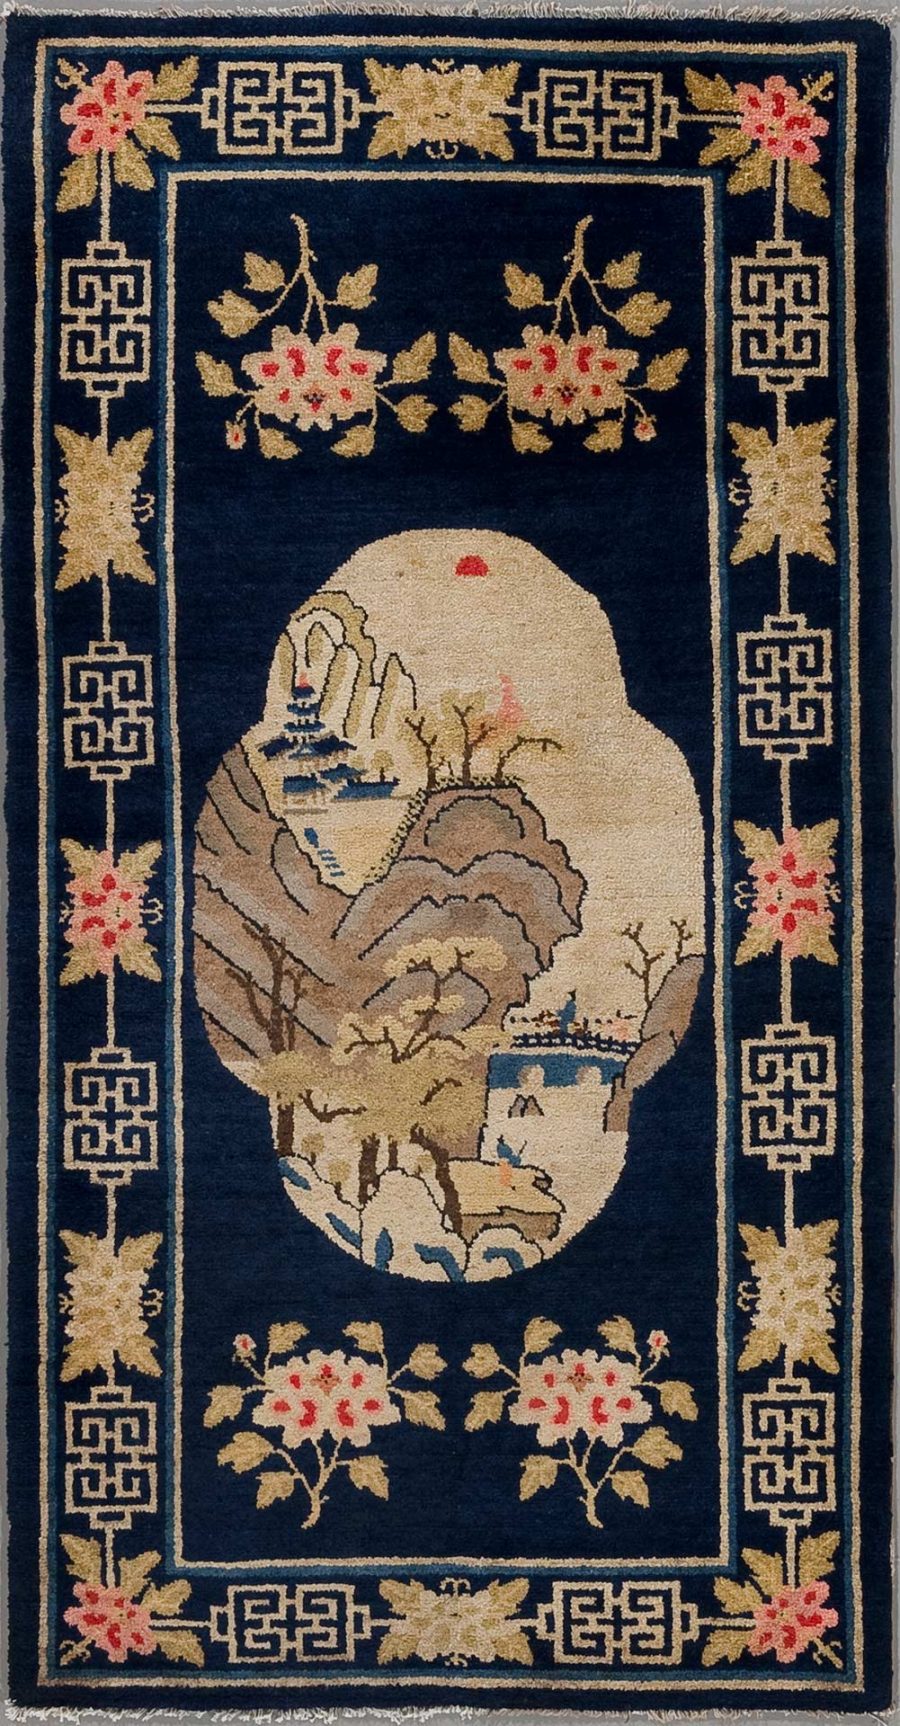 Traditioneller chinesischer Teppich mit aufwändigem floralem Muster und einer zentralen ovale Bildfläche, die eine Landschaftsszene mit Bergen, Bäumen, einem Gebäude und einem Boot auf Wasser zeigt. Der Teppich hat einen dunkelblauen Hintergrund mit beige- und rosafarbener Verzierung und geometrischen Motiven an den Rändern.